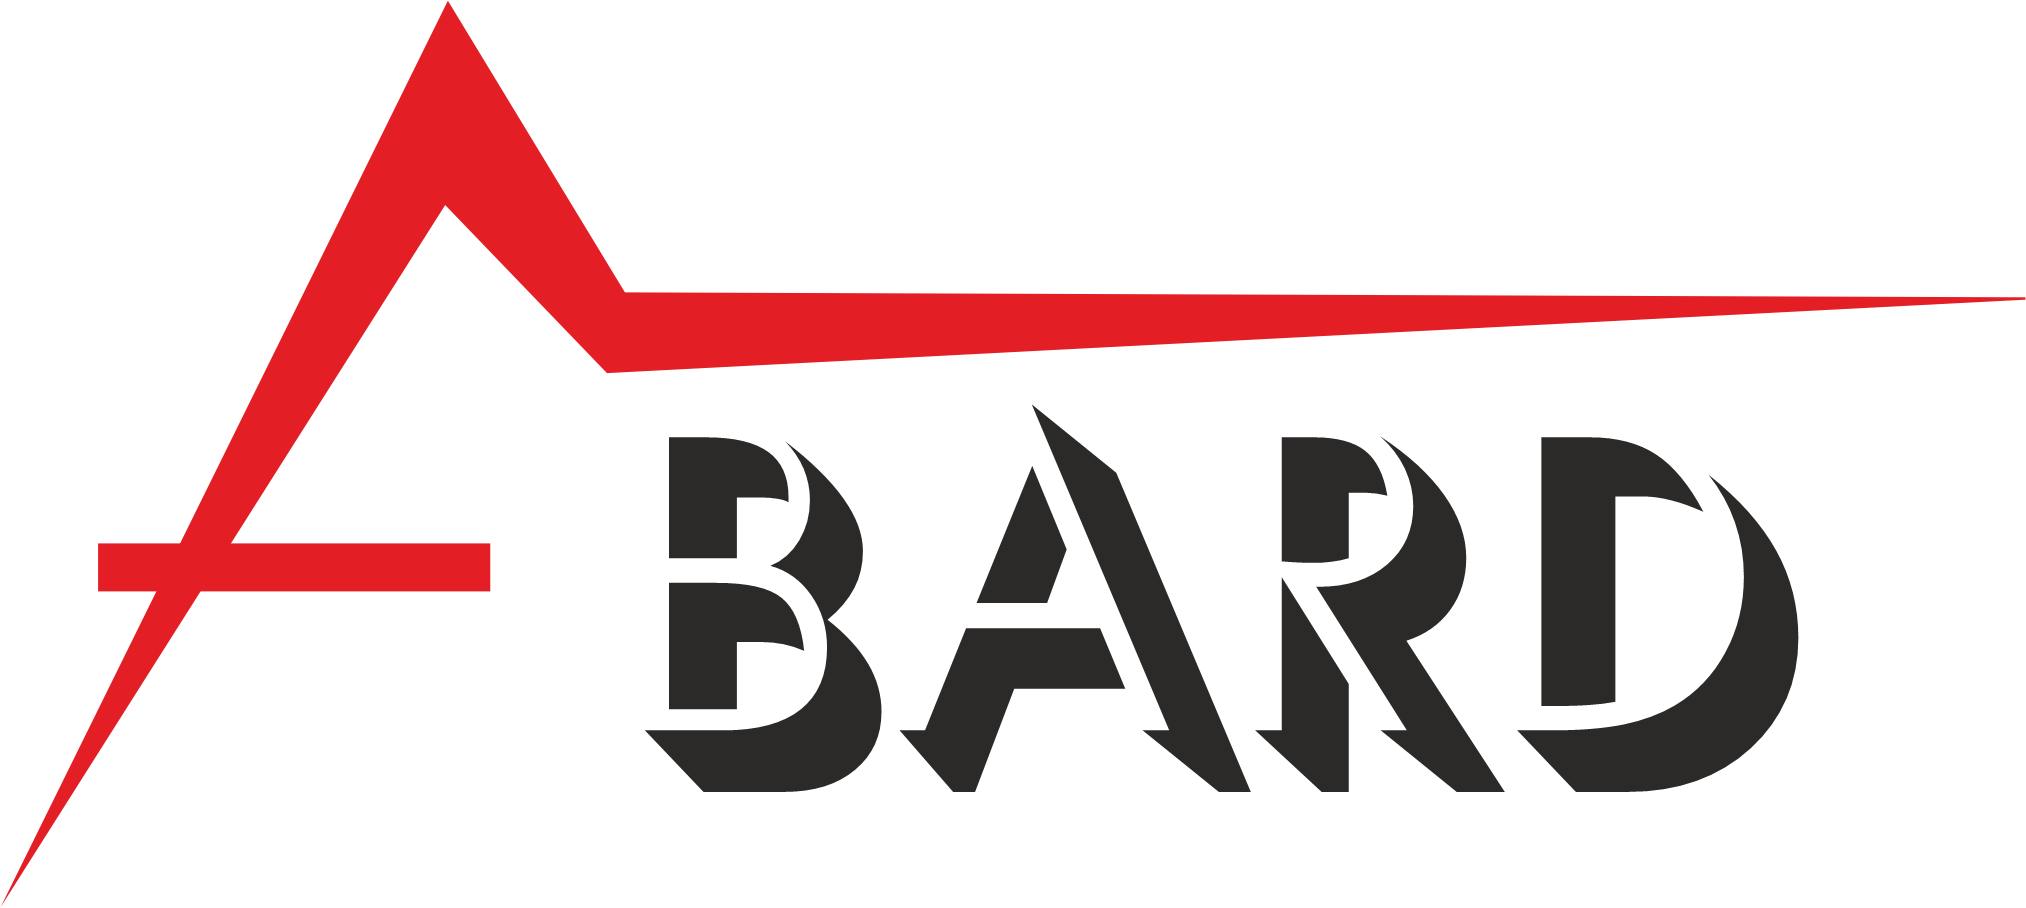 Abard logo, 2020